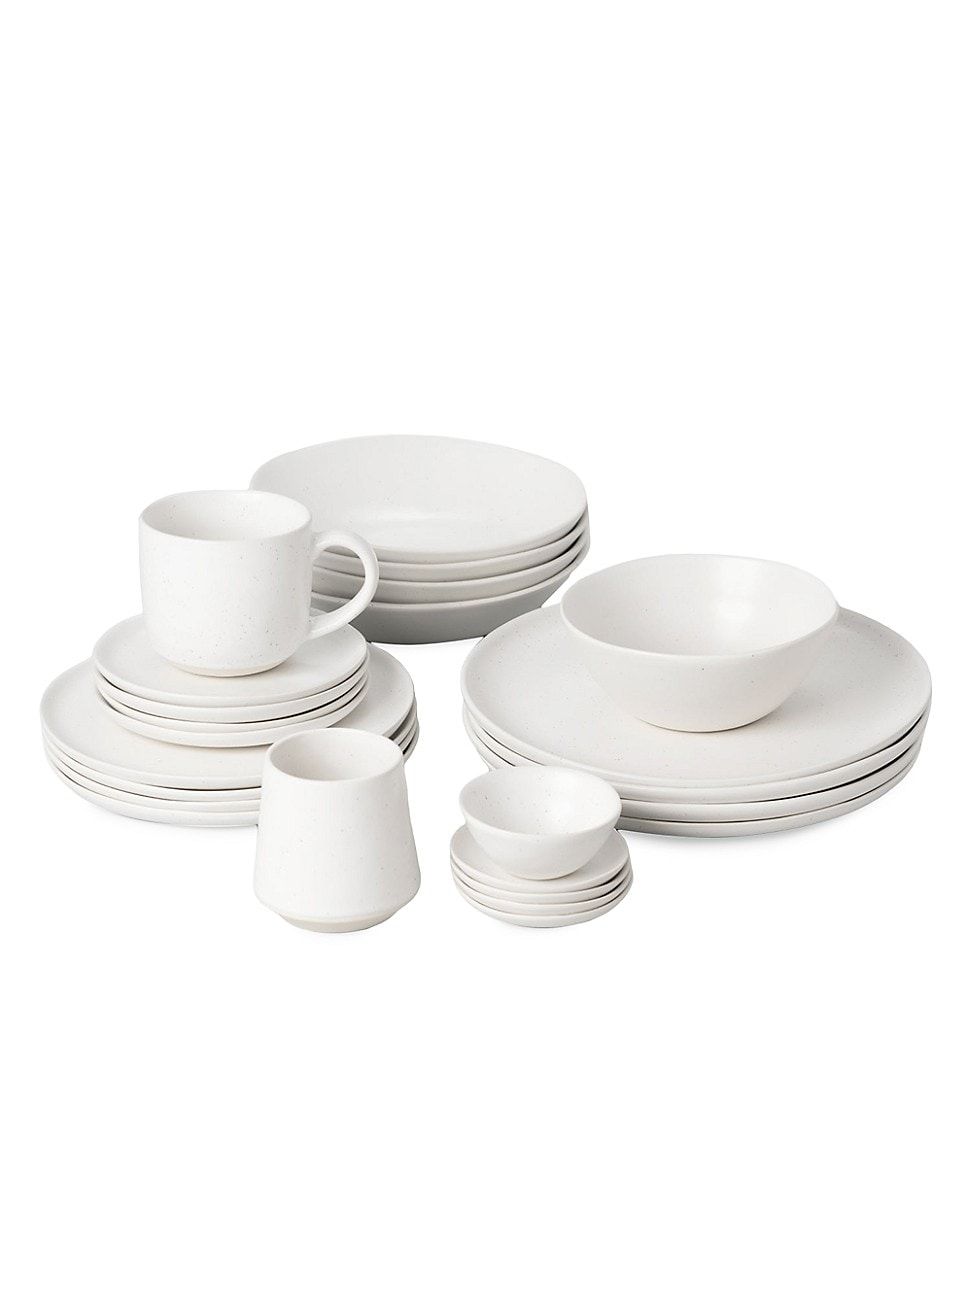 Full Dinnerware Set - Speckled White | Saks Fifth Avenue